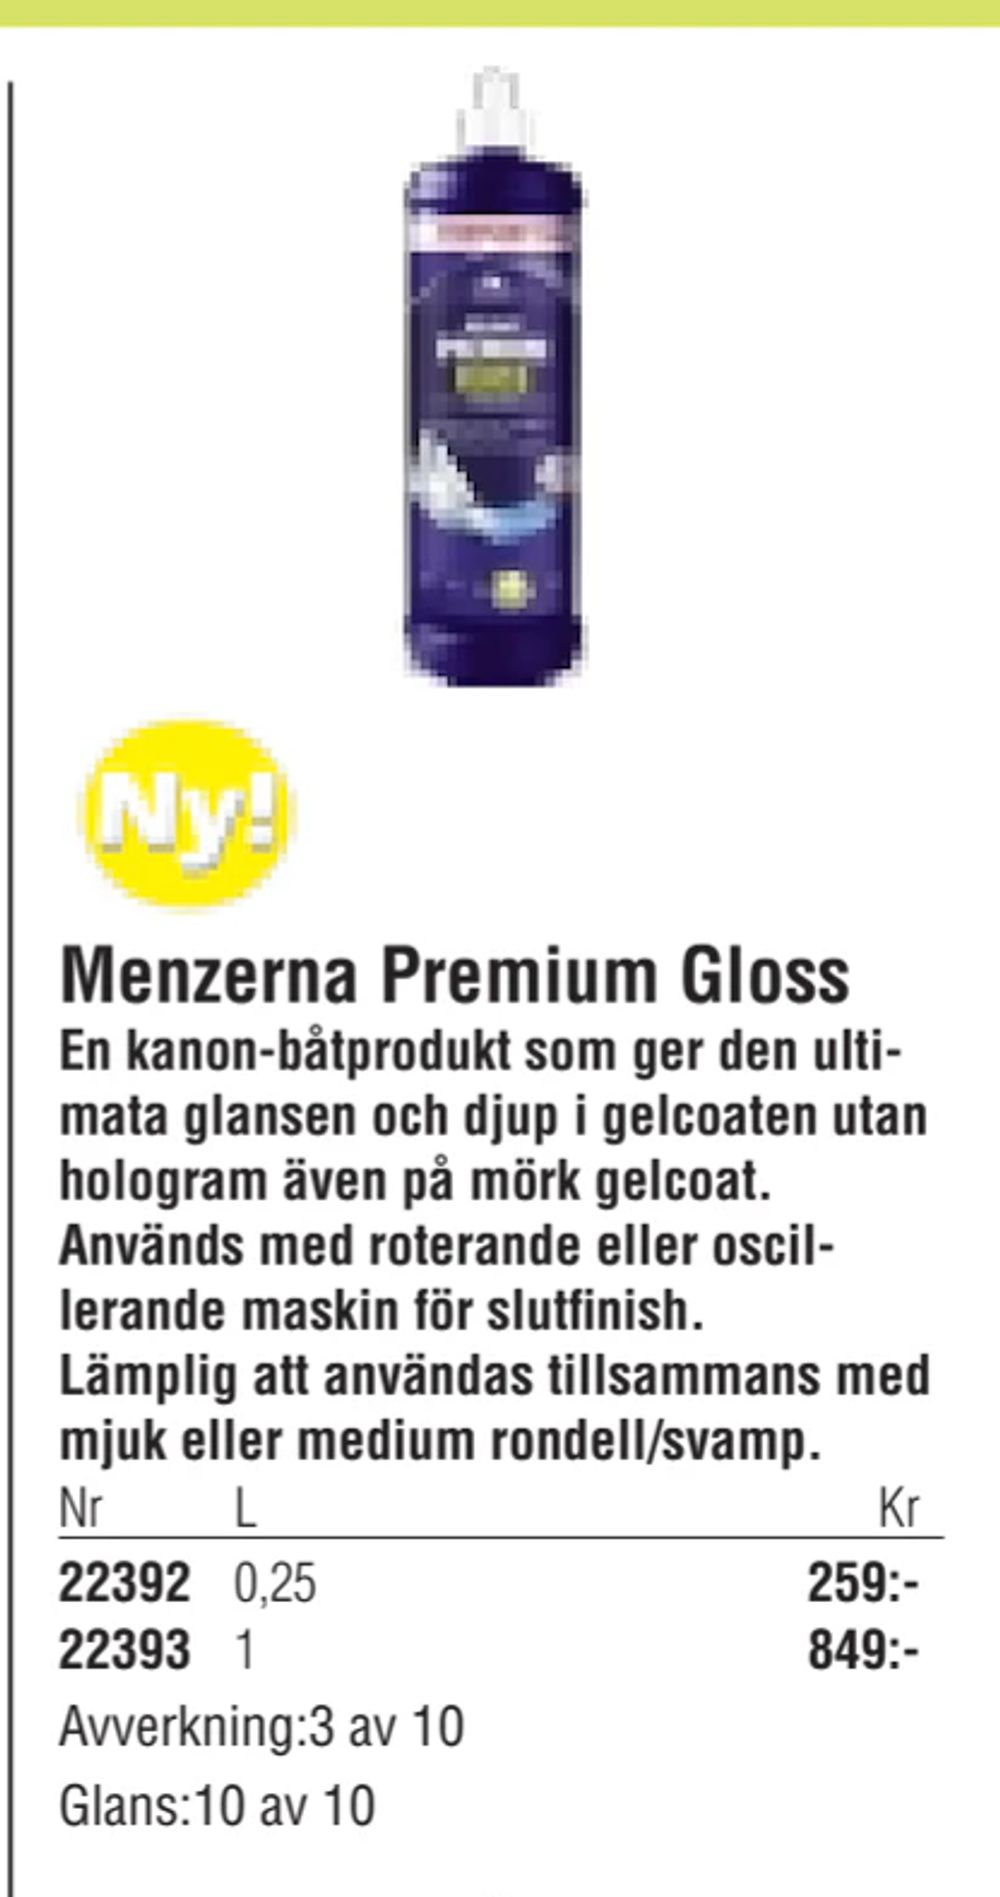 Erbjudanden på Menzerna Premium Gloss från Erlandsons Brygga för 259 kr